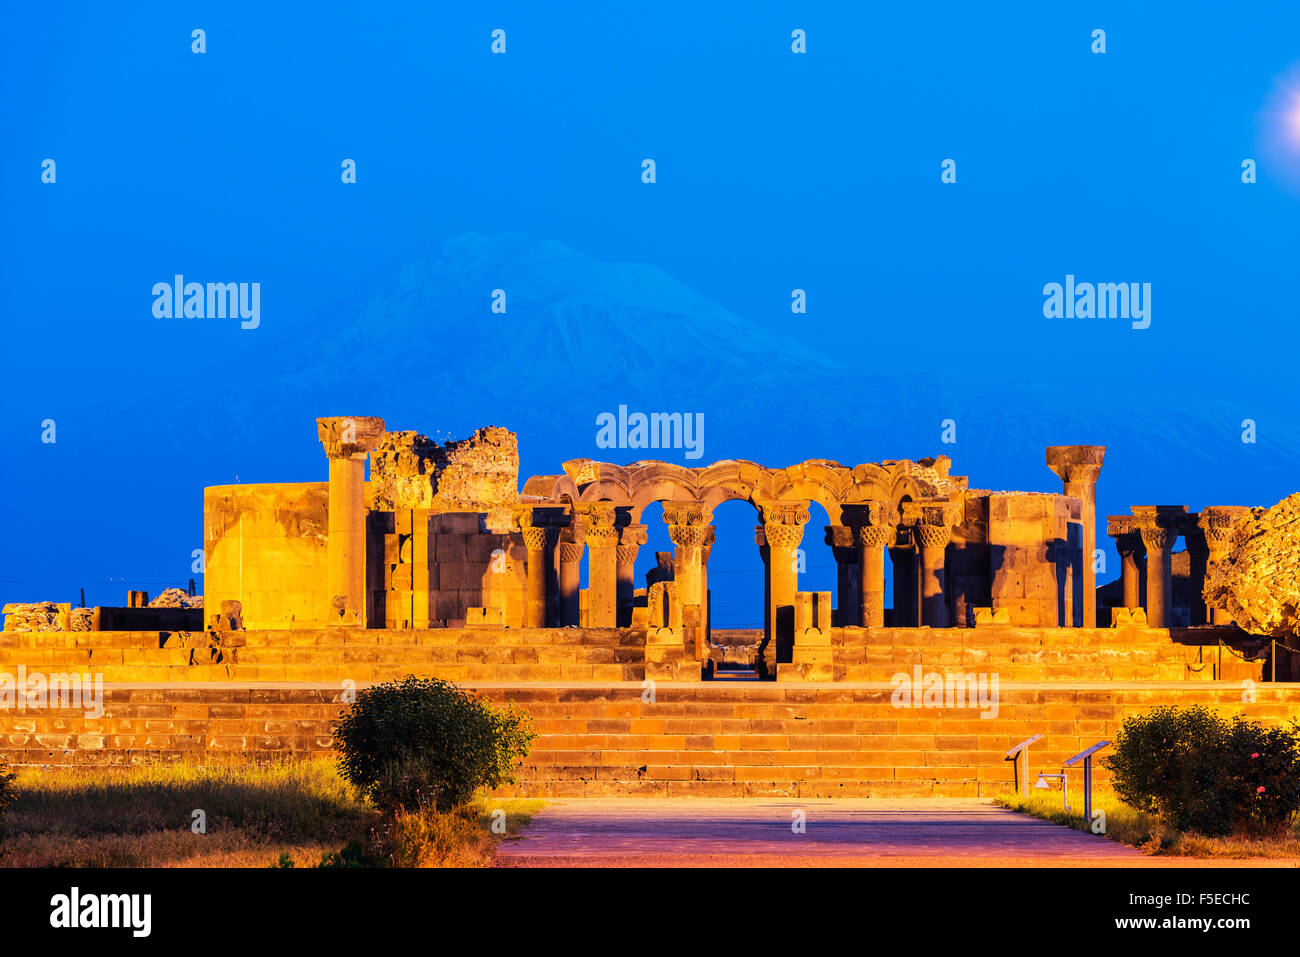 Zvartnots archäologische Ruine, UNESCO-Weltkulturerbe, Berg Ararat in der Türkei hinter Armenien, Kaukasus, Zentralasien, Asien Stockfoto